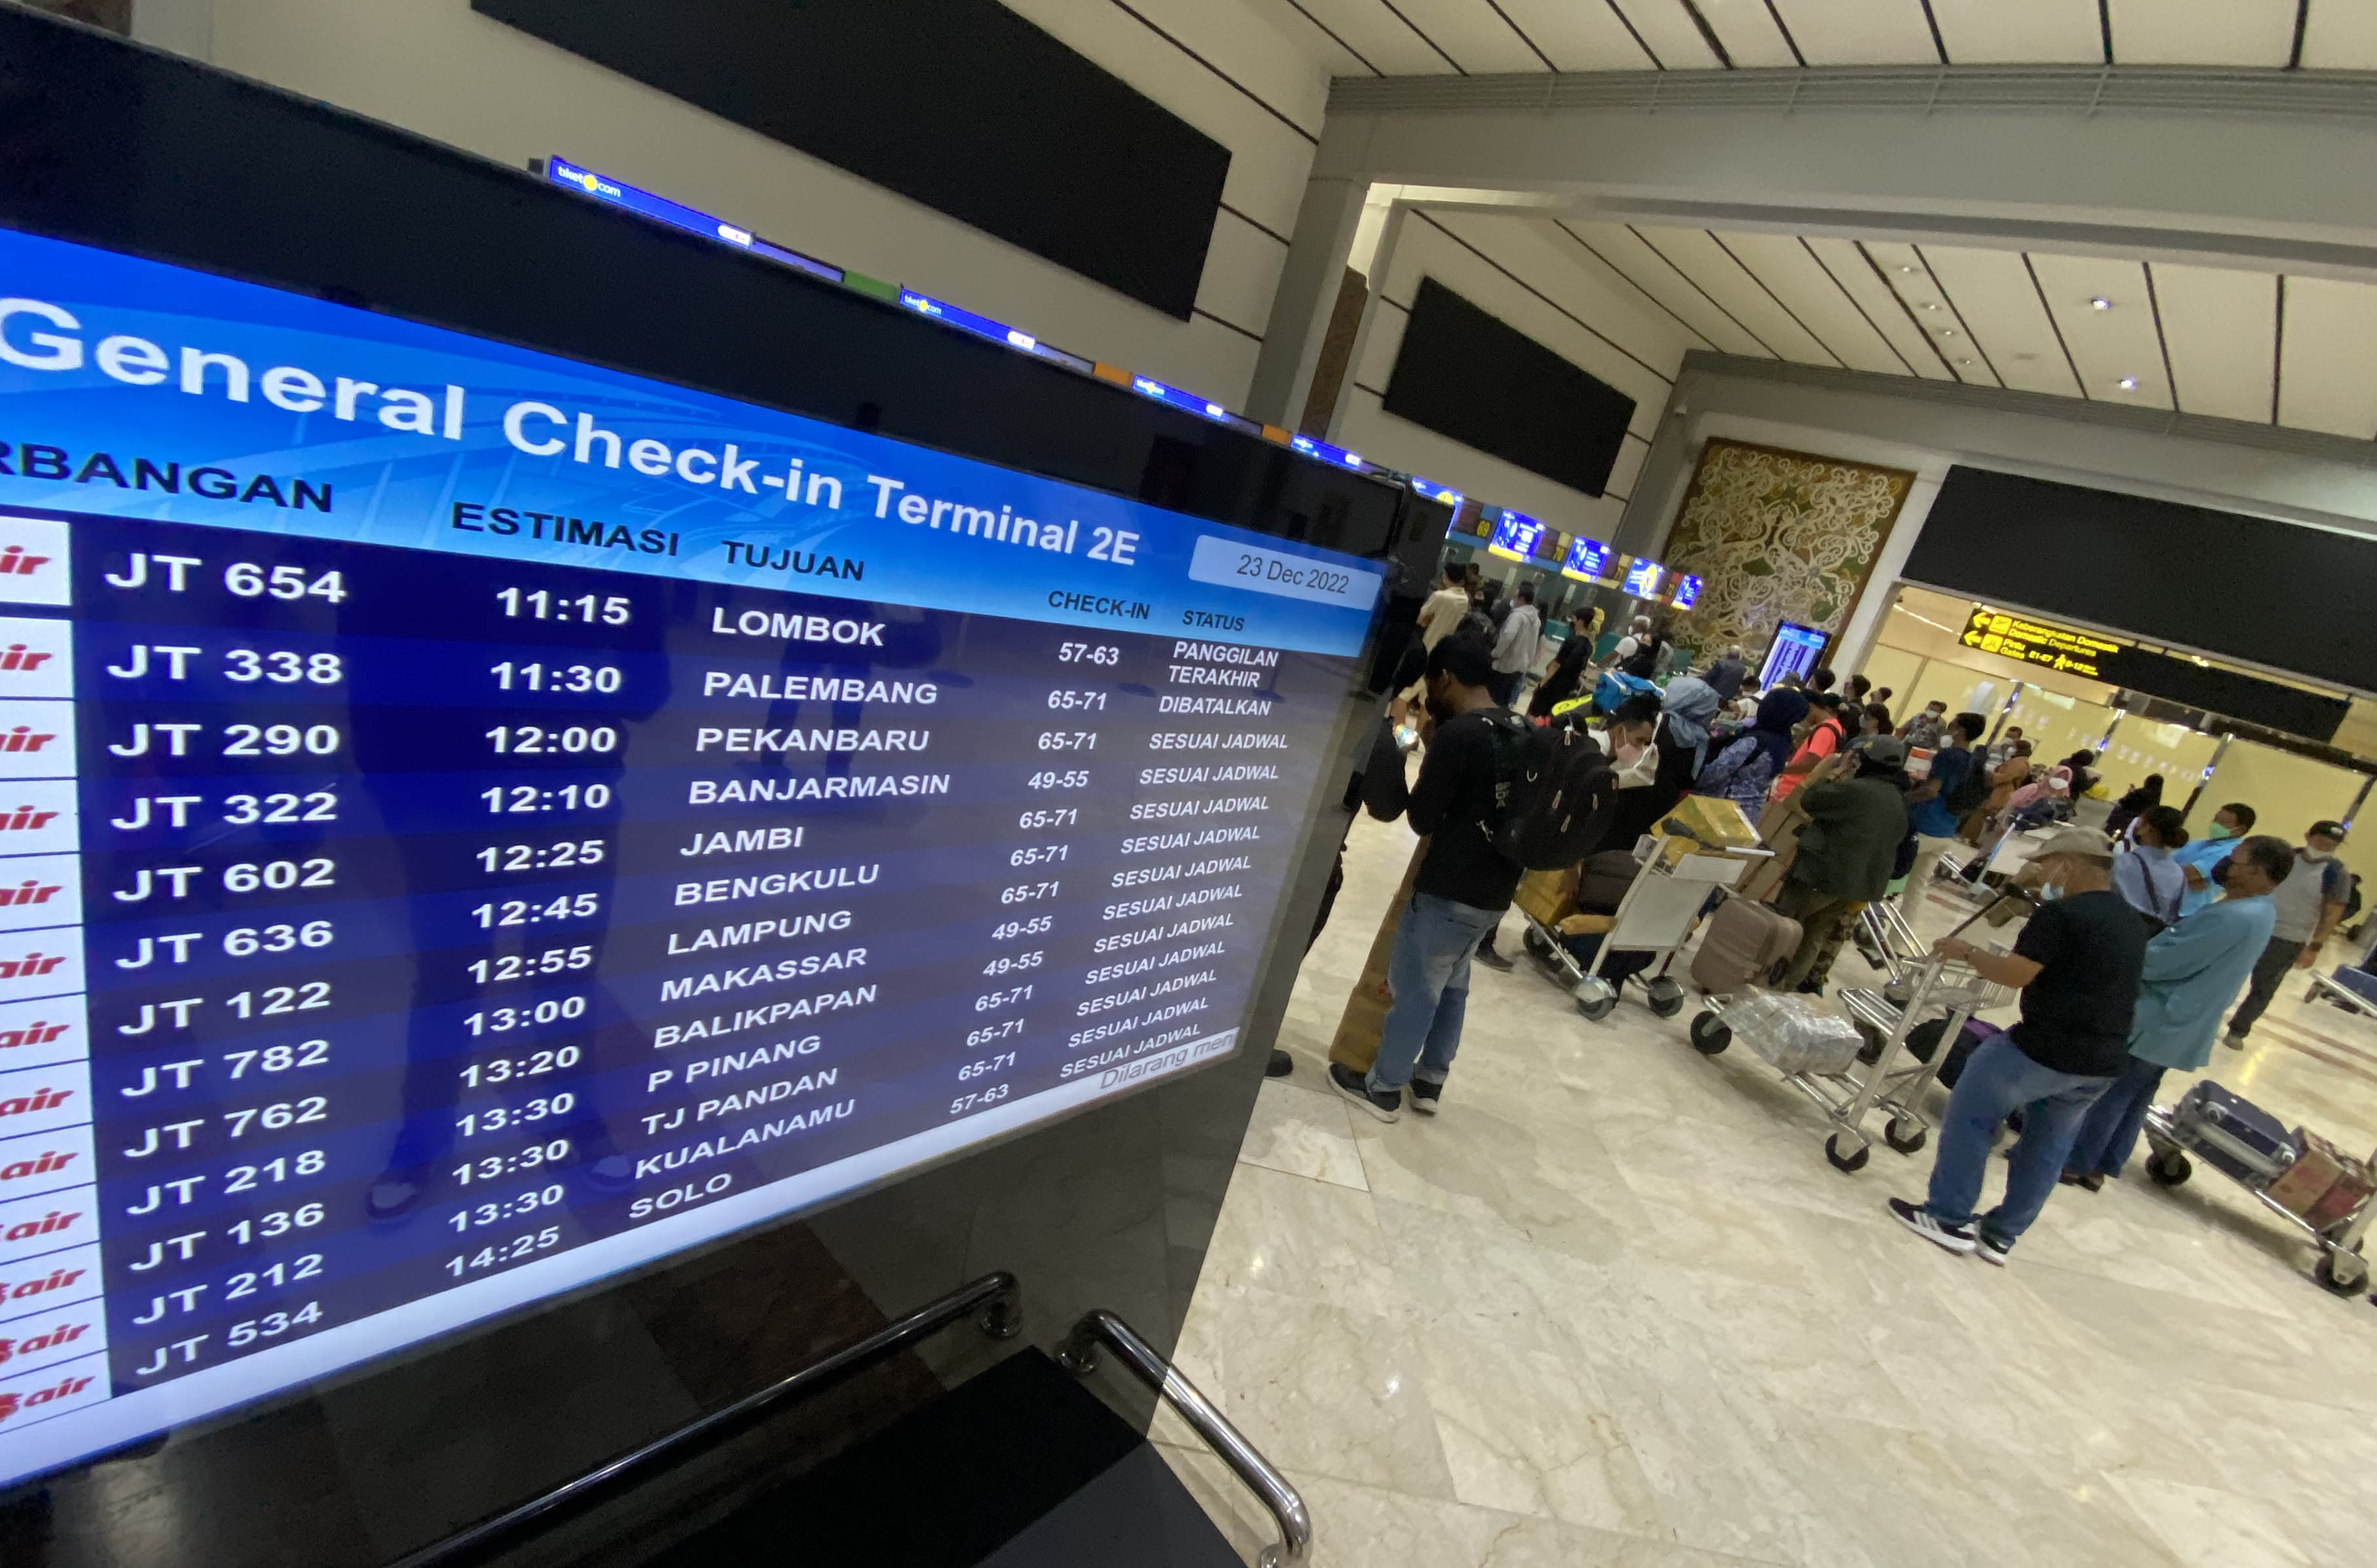 Sejumlah calon penumpang memadati area check in counter Terminal 2 F Bandara Soekarno Hatta. Puncak kepadatan libur Nataru diperkirakan terjadi kemarin dan hari ini, 24 Desember 2022. Foto : Panji Asmoro/TrenAsia